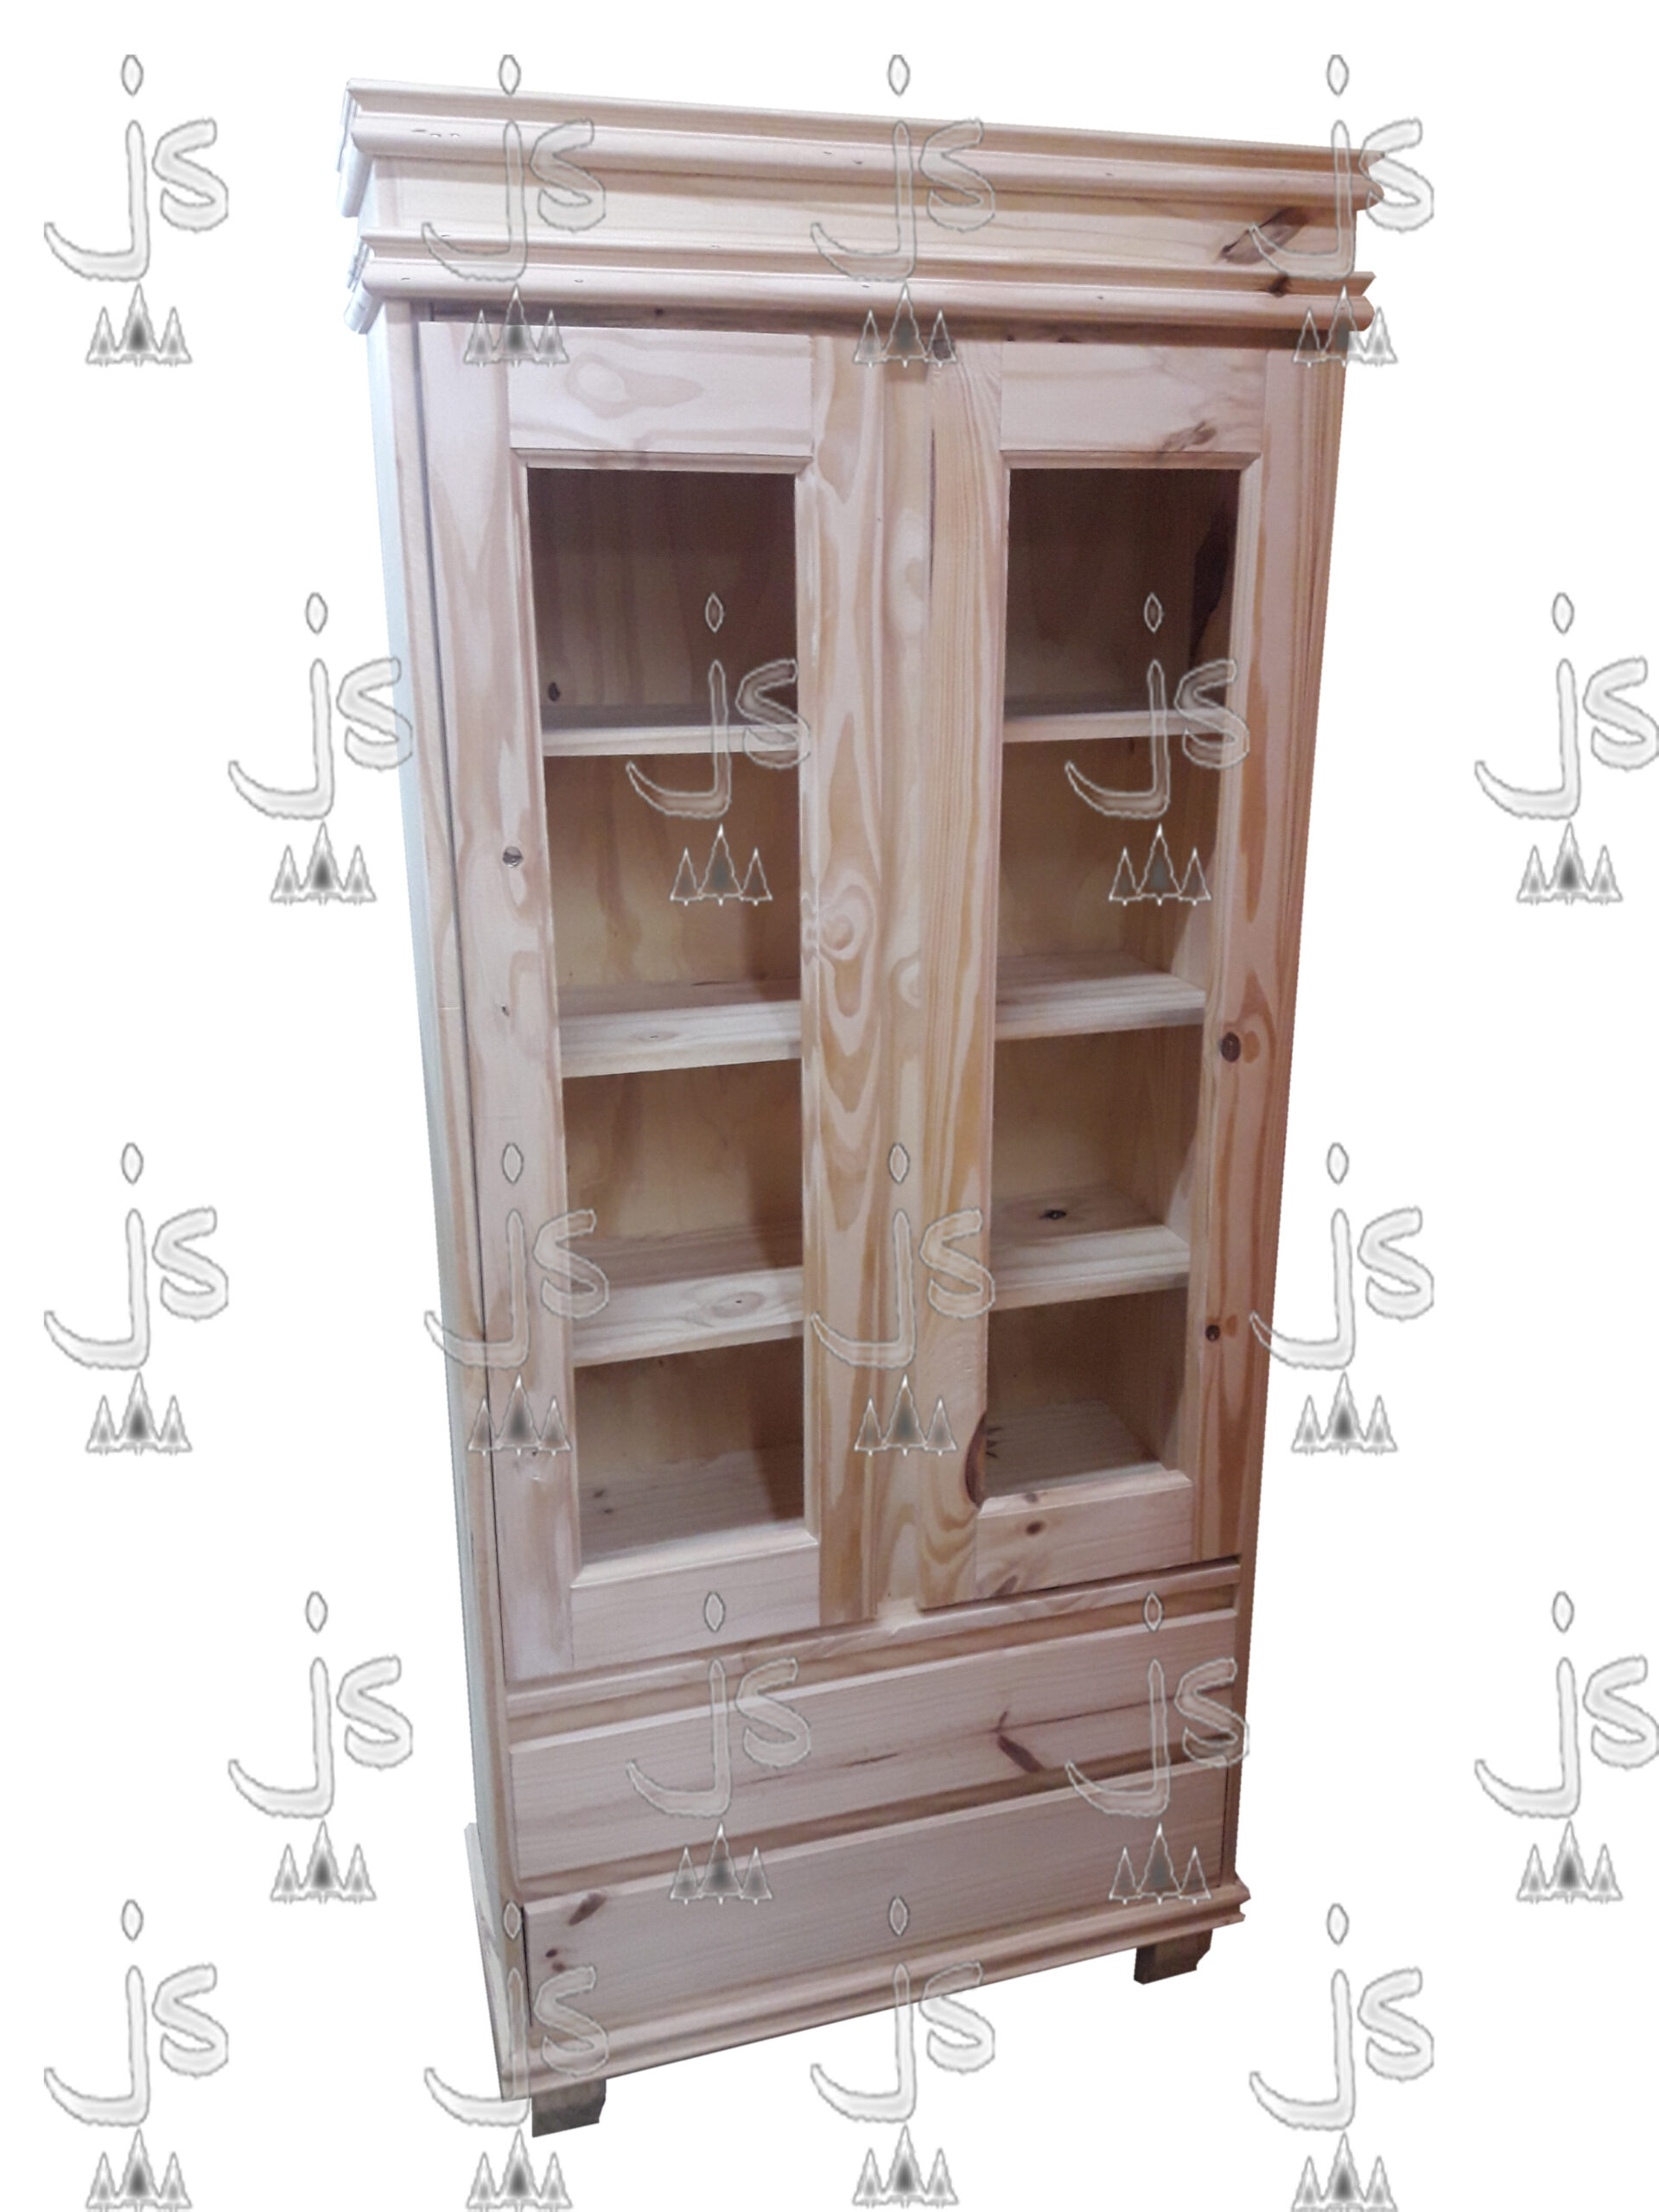 Cristalero vajillero doble puerta vajillera con dos cajones hecho de madera de pino. Fabricado por JS. Fábrica de muebles.